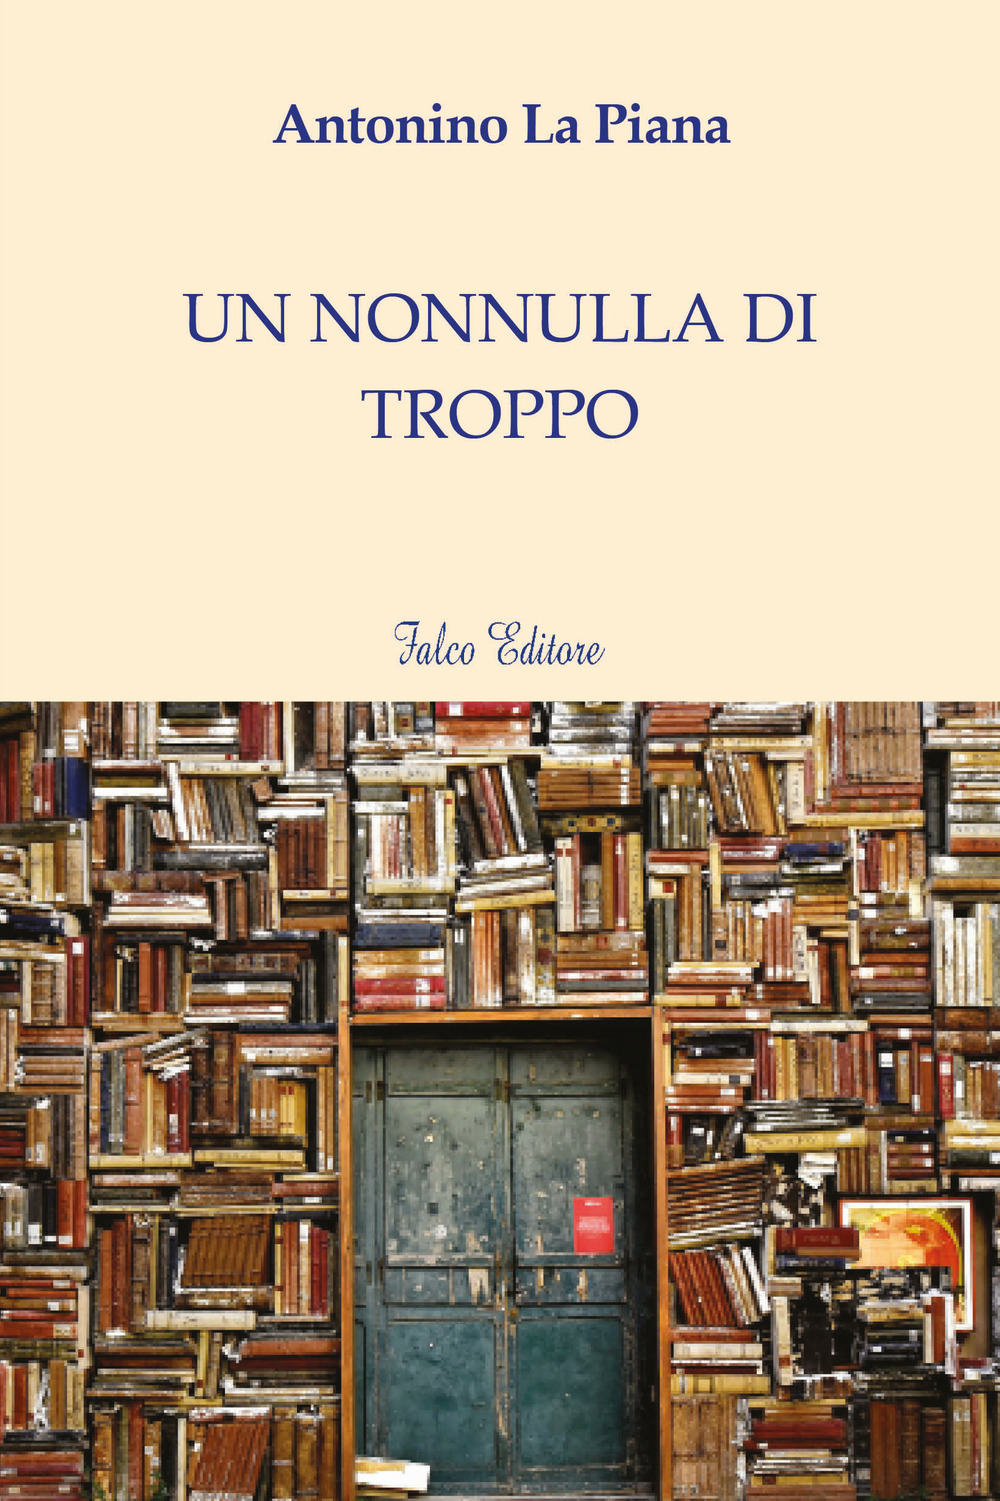 Libri La Piana Antonino - Un Nonnulla Di Troppo NUOVO SIGILLATO, EDIZIONE DEL 02/12/2019 SUBITO DISPONIBILE